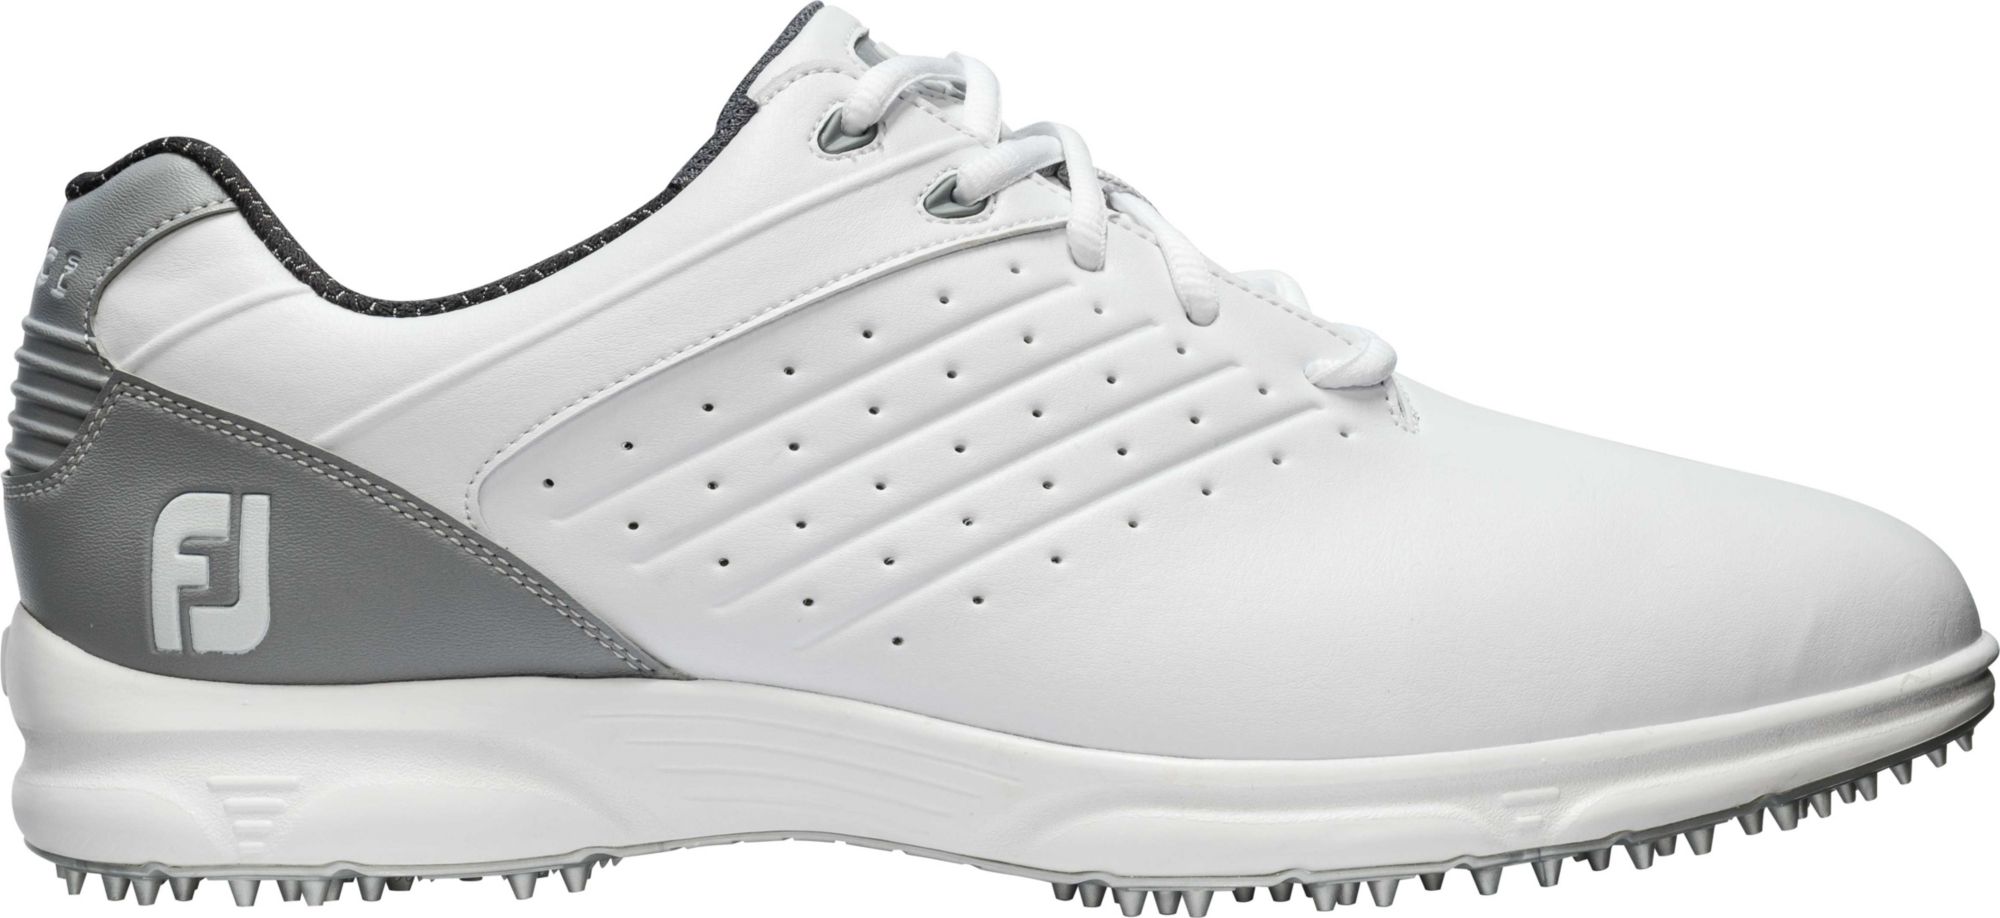 Men's Spikeless Golf Shoes | Golf Galaxy